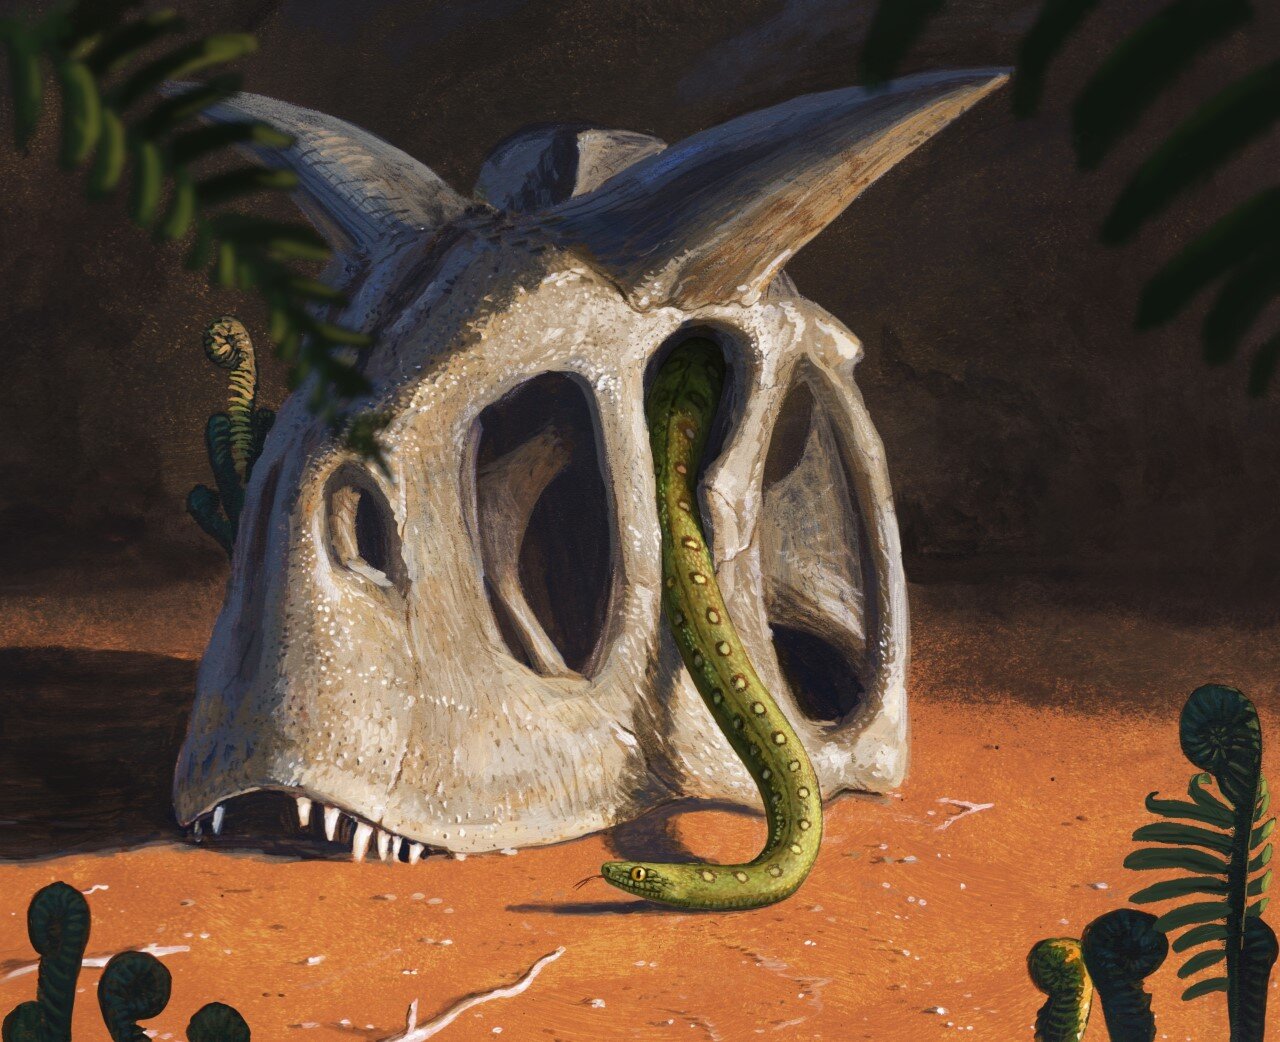 小行星撞击地球在白垩纪末消灭了恐龙 蛇却进化了(Credit: Joschua Knüppe)